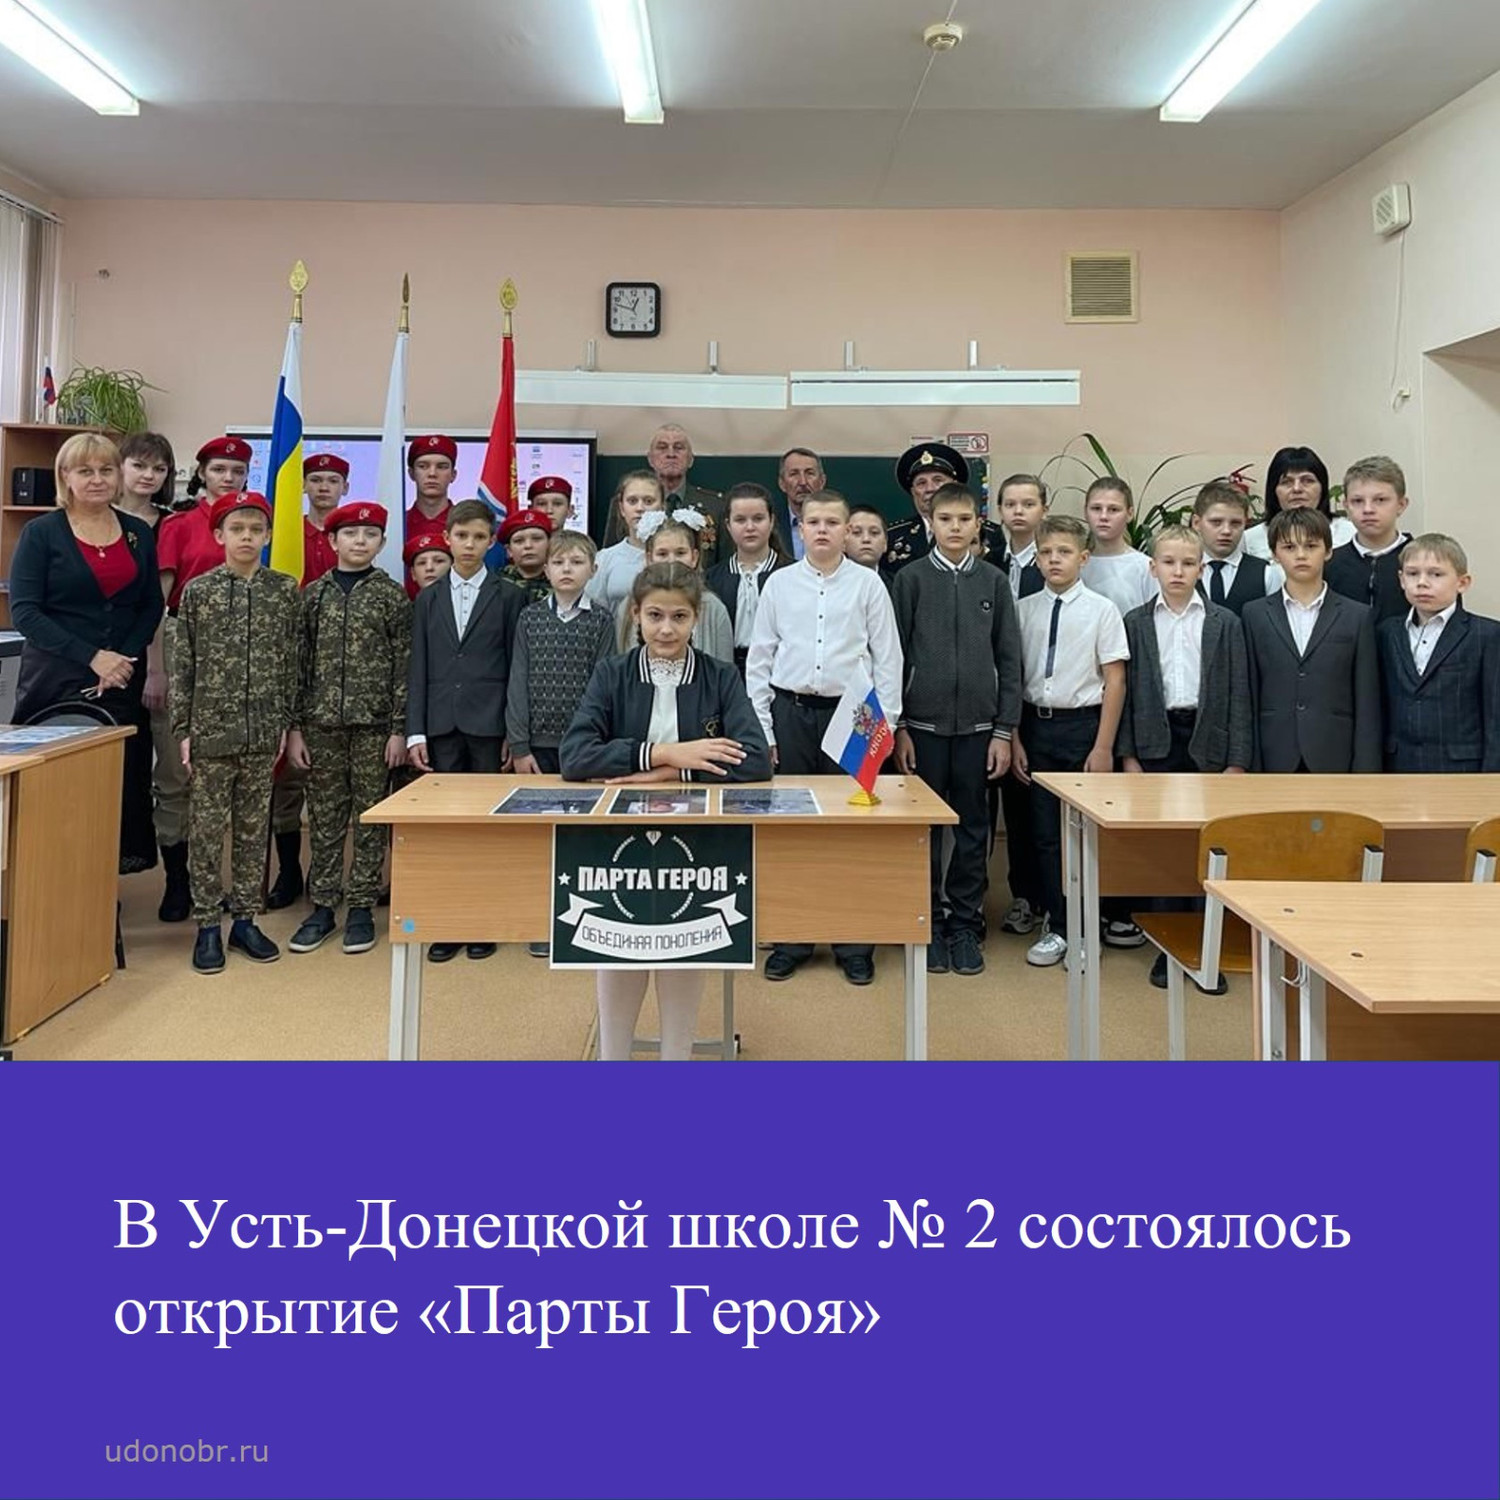 В Усть-Донецкой школе №2 состоялось торжественное открытие «Парты Героя»